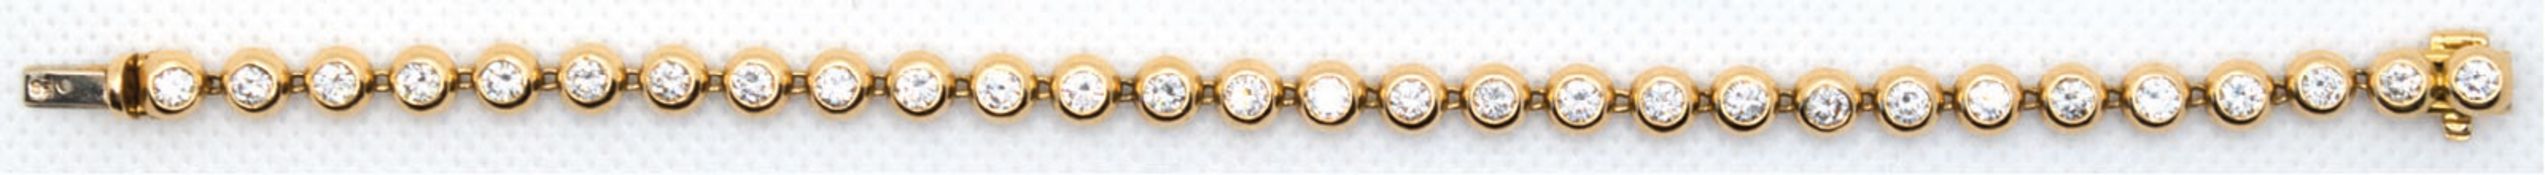 Brillant-Armband, 750er GG,ausgefaßt mit 29 Brillanten, von zus. ca. 4,55 ct., VVS-VS, Steckschloß 